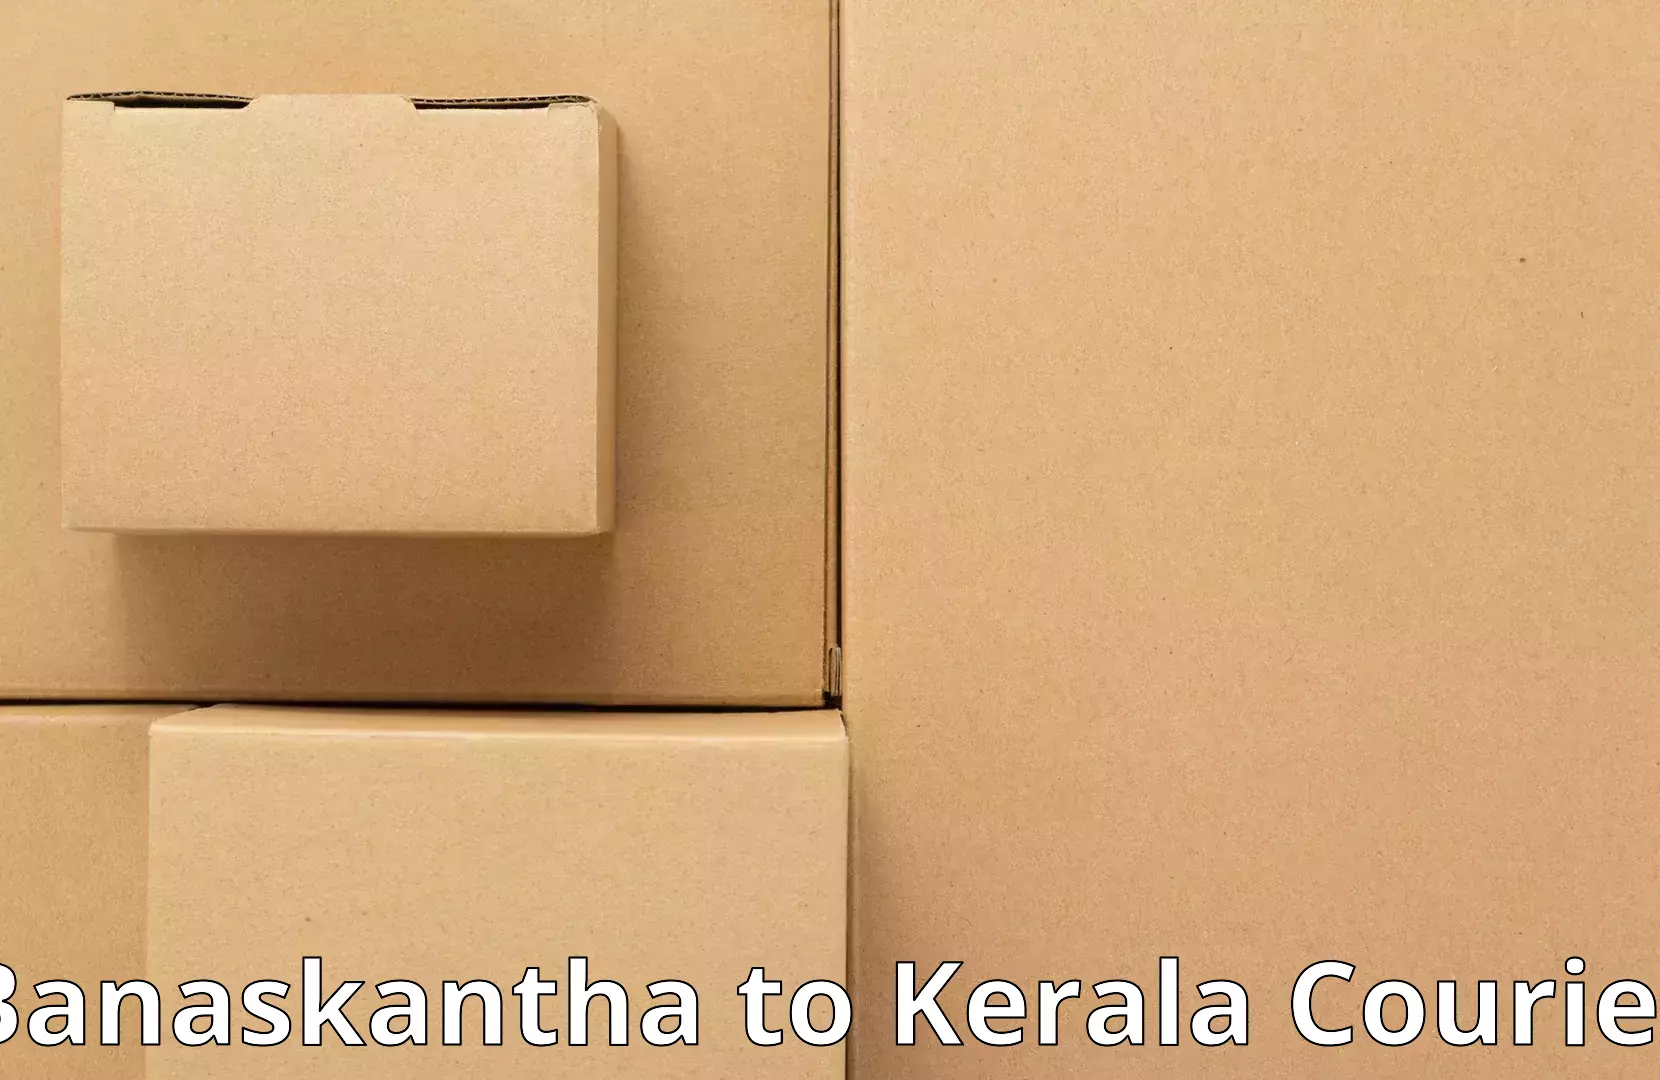 Nationwide furniture movers Banaskantha to Kalanjoor